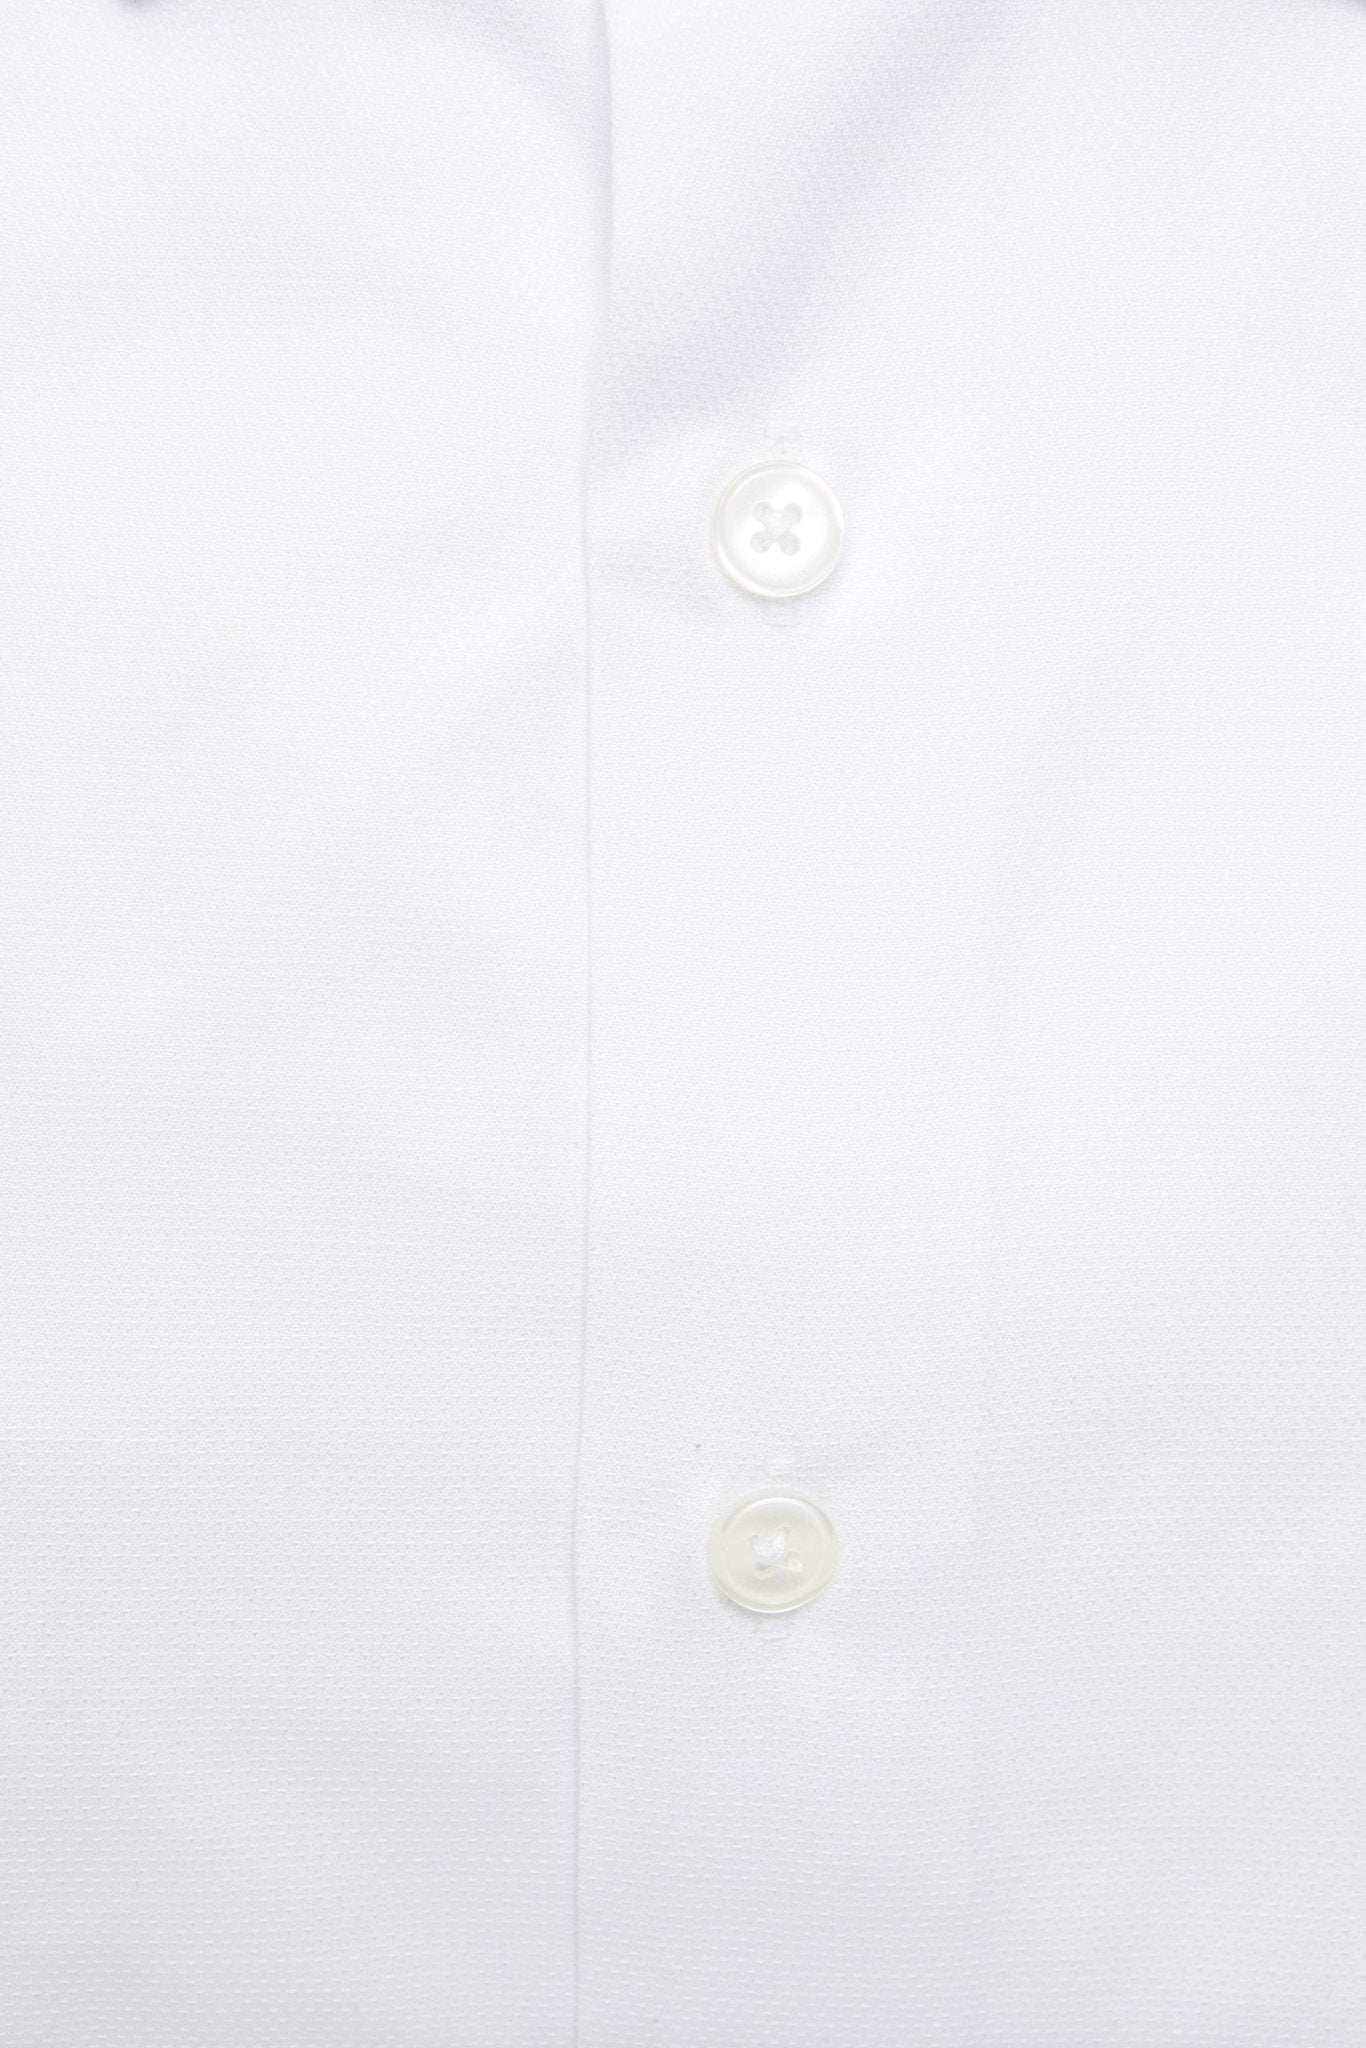 Robert Friedman White Cotton Shirt - Fizigo